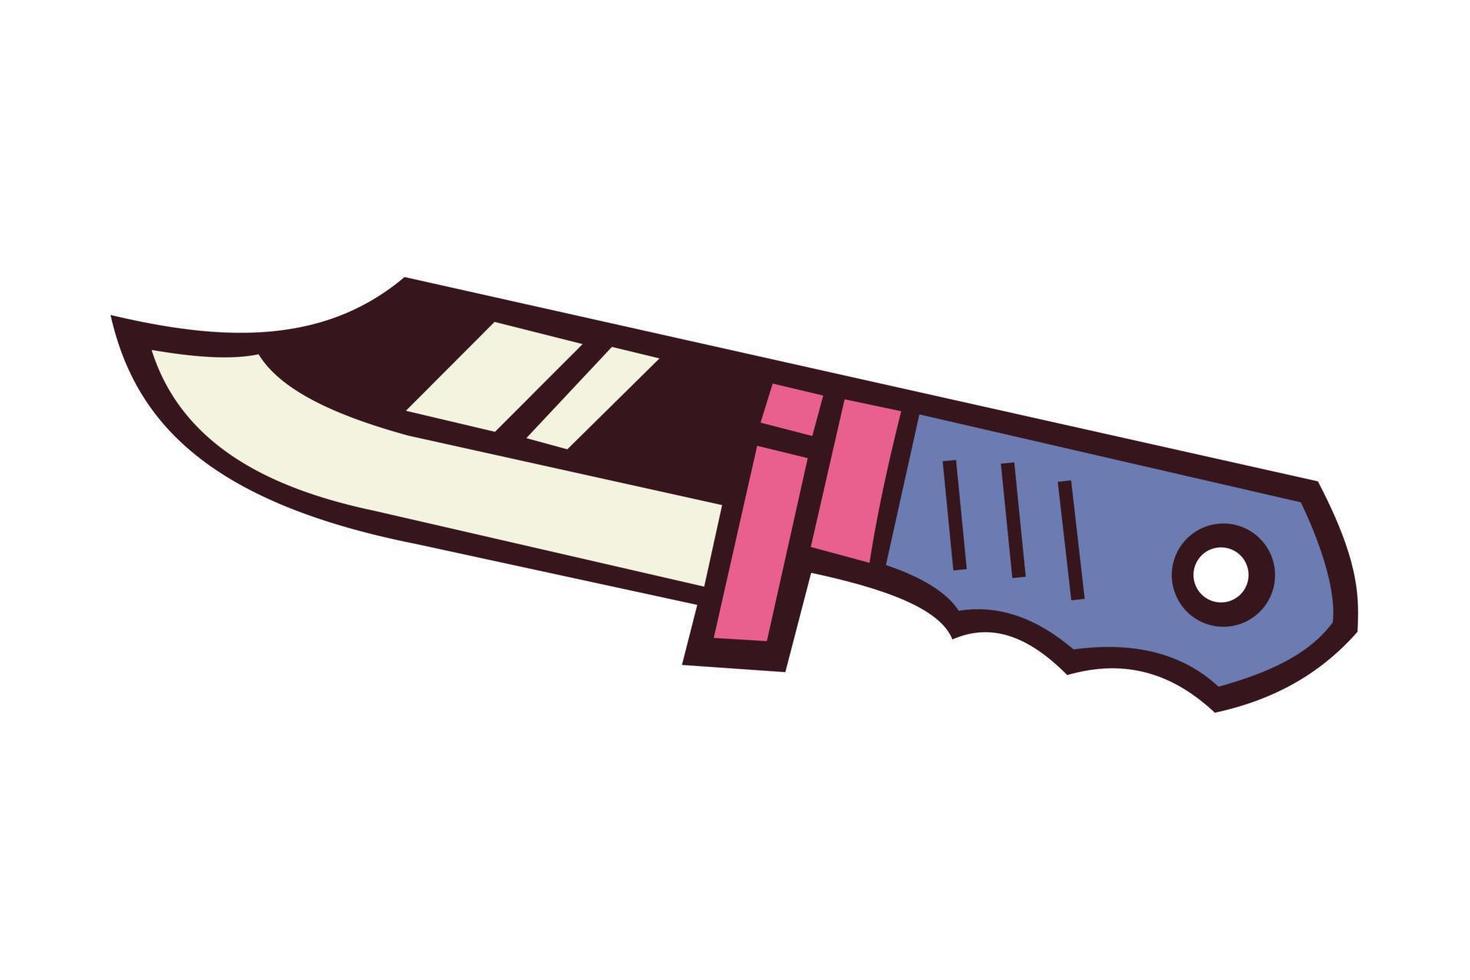 Vektor-Illustration eines scharfen Messers mit blauem Griff vektor